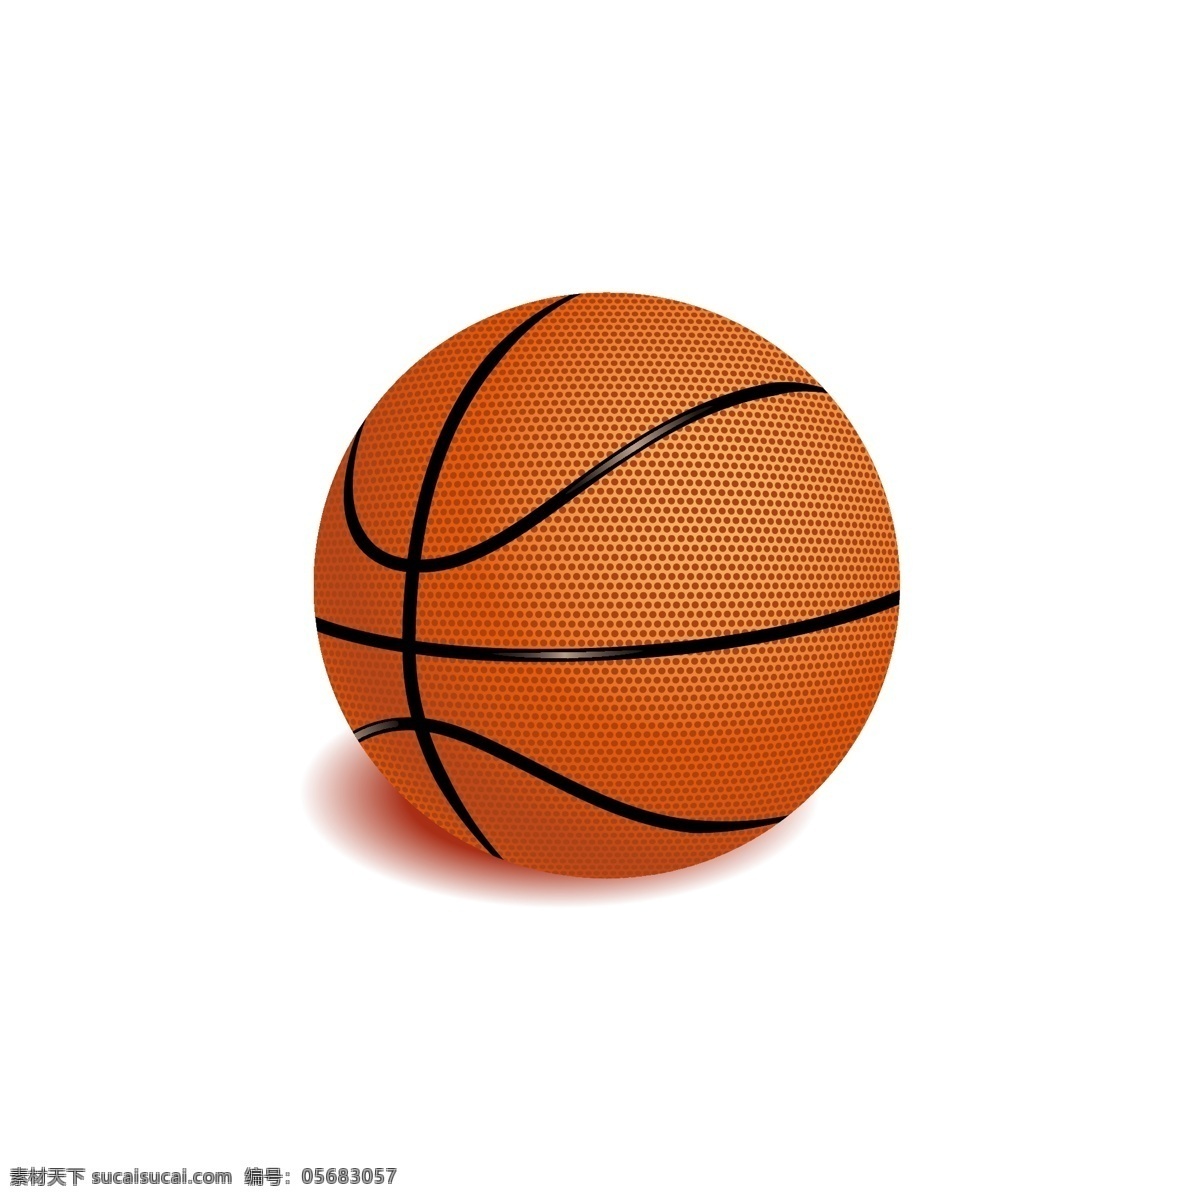 篮球 打篮球 篮球素材 矢量篮球素材 卡通篮球 卡通篮球素材 球篮球比赛 篮球运动 类素材 球类运动 体育用品 体育竞技 体育器材 文体用品